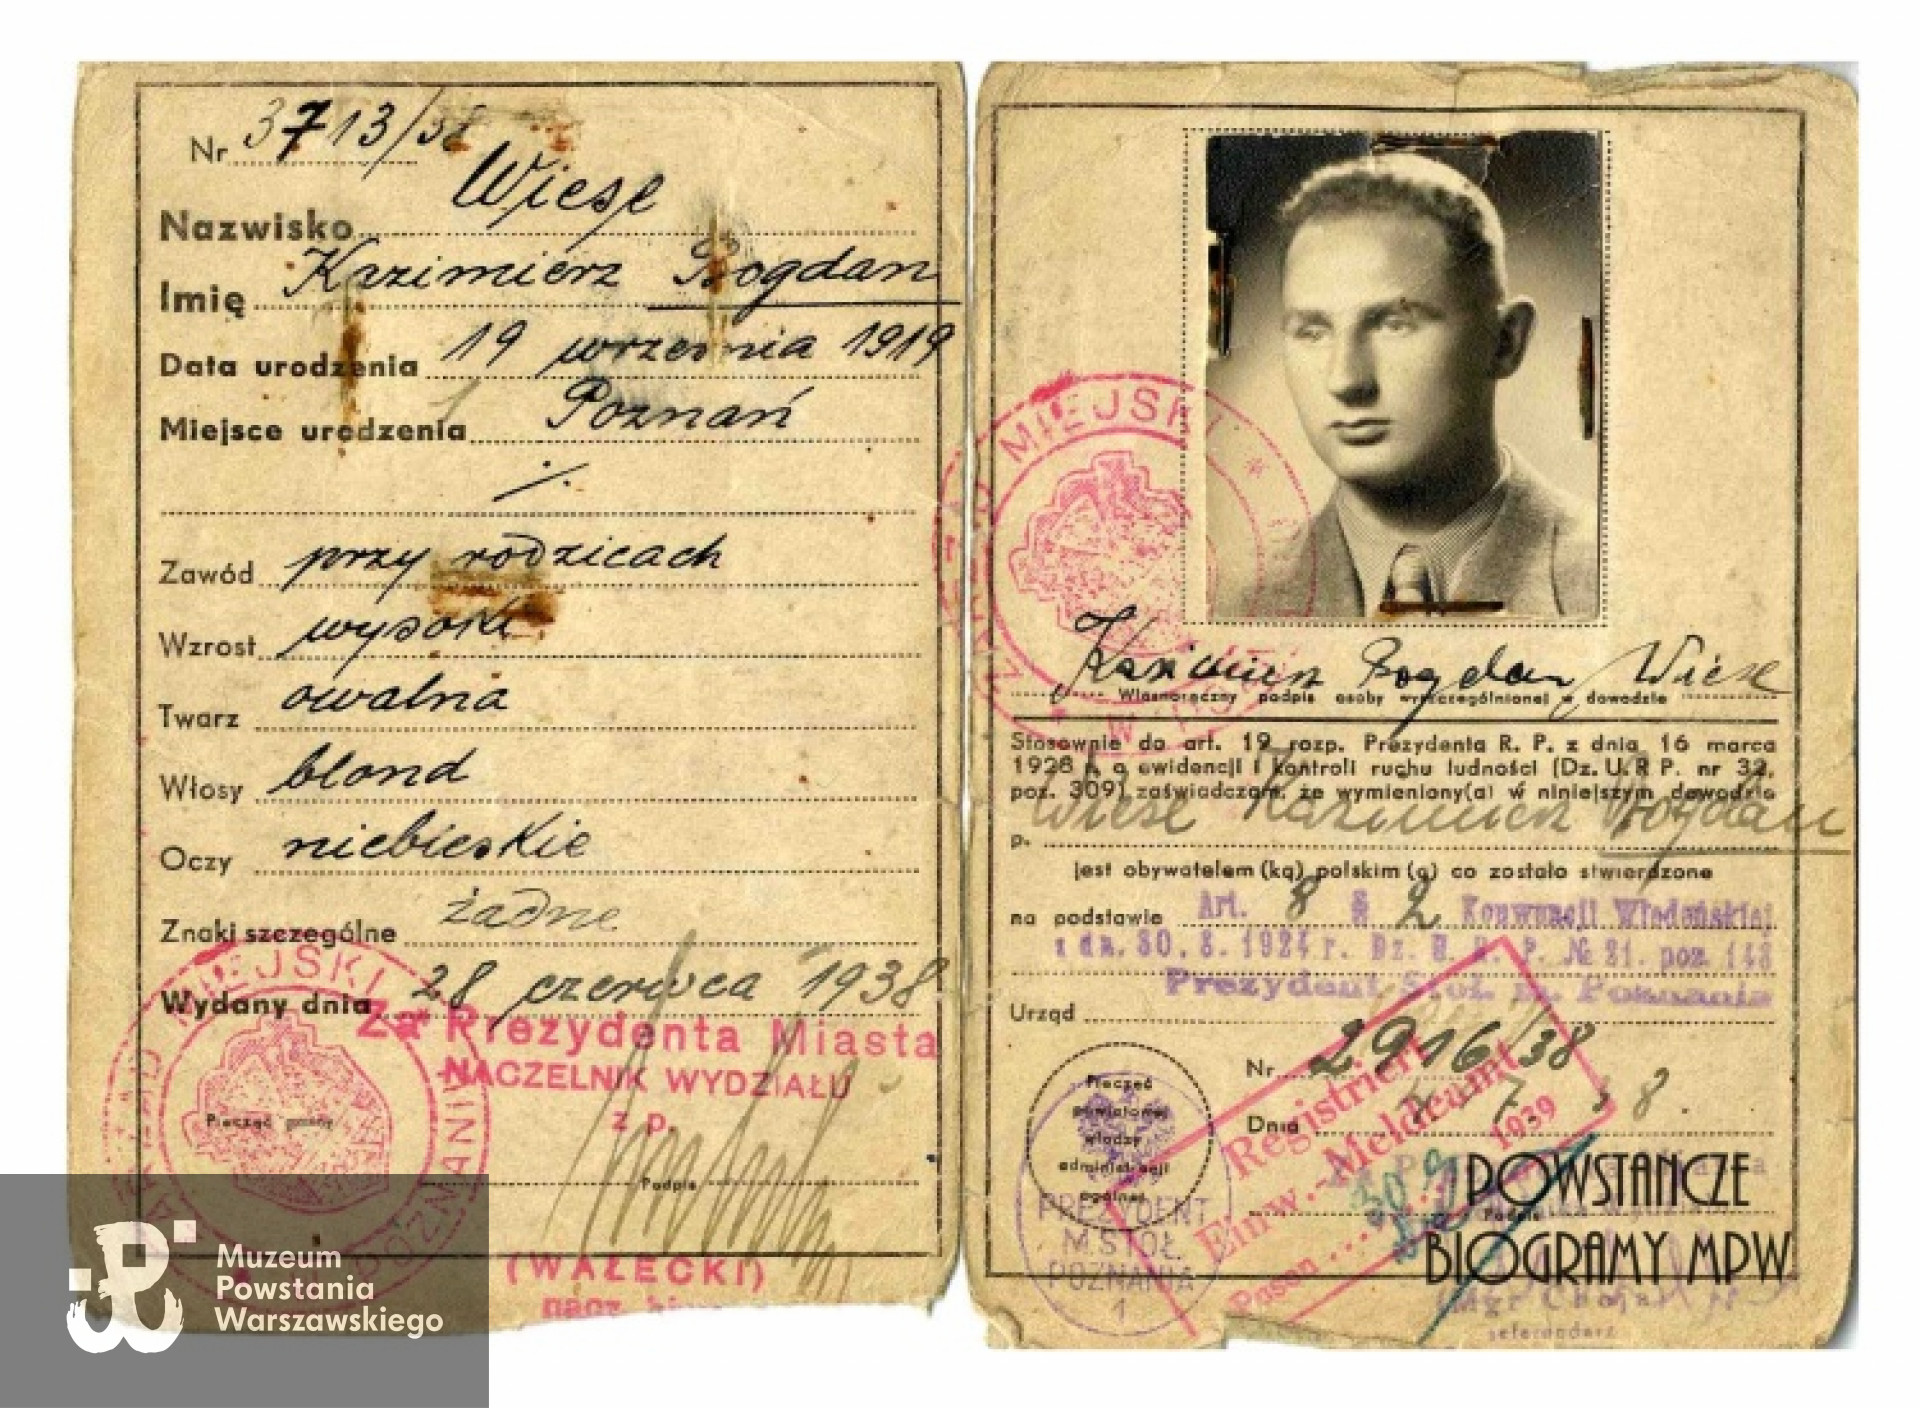 Kazimierz Bogdan Wiese: dowód osobisty wydany przez polskie władze w roku 1938. Ze zbiorów Muzeum Powstania Warszawskiego, sygn. P/4479